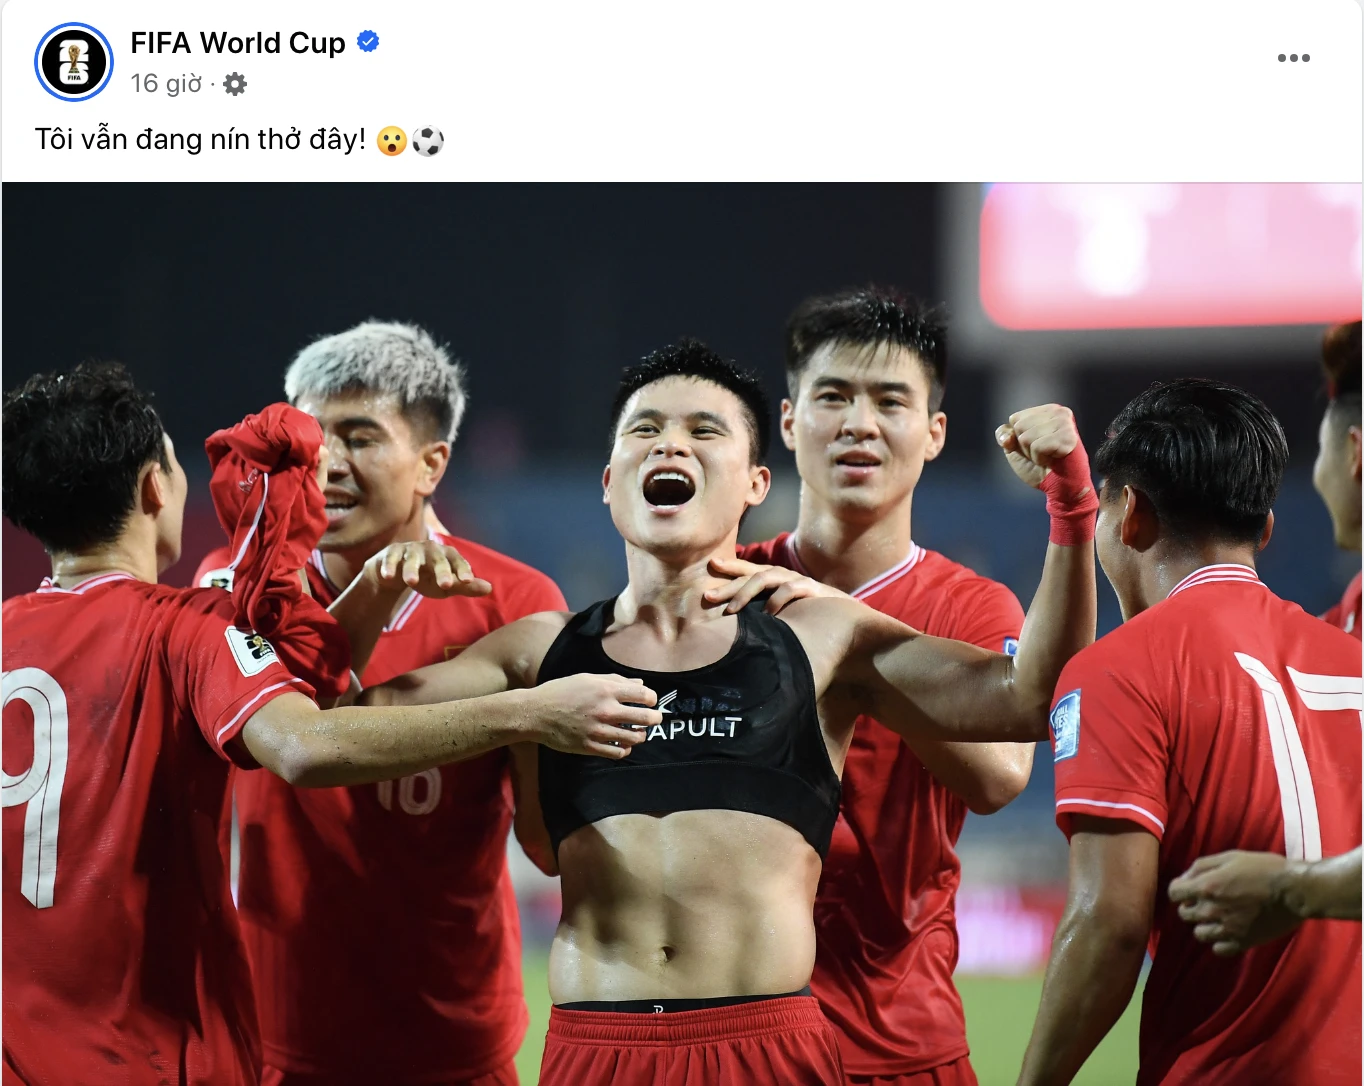 Trang chủ FIFA World Cup hào hứng 'khoe' khoảnh khắc ăn mừng của Tuấn Hải